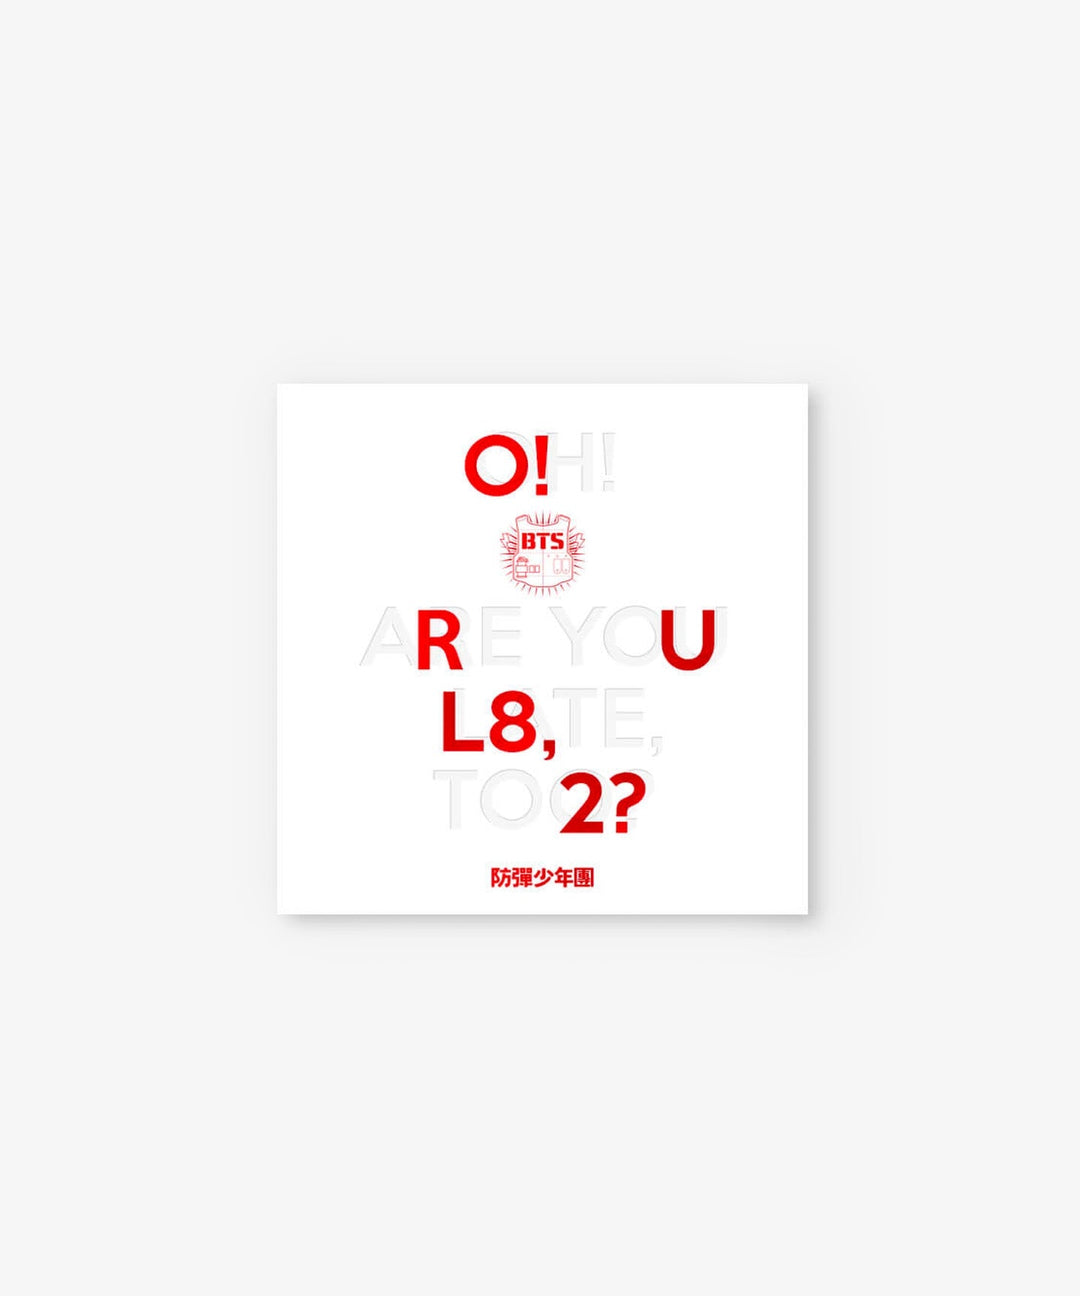 BTS - O!RUL8,2? (Oh! Are you late, too?) (1st Mini-Album) - Seoul-Mate